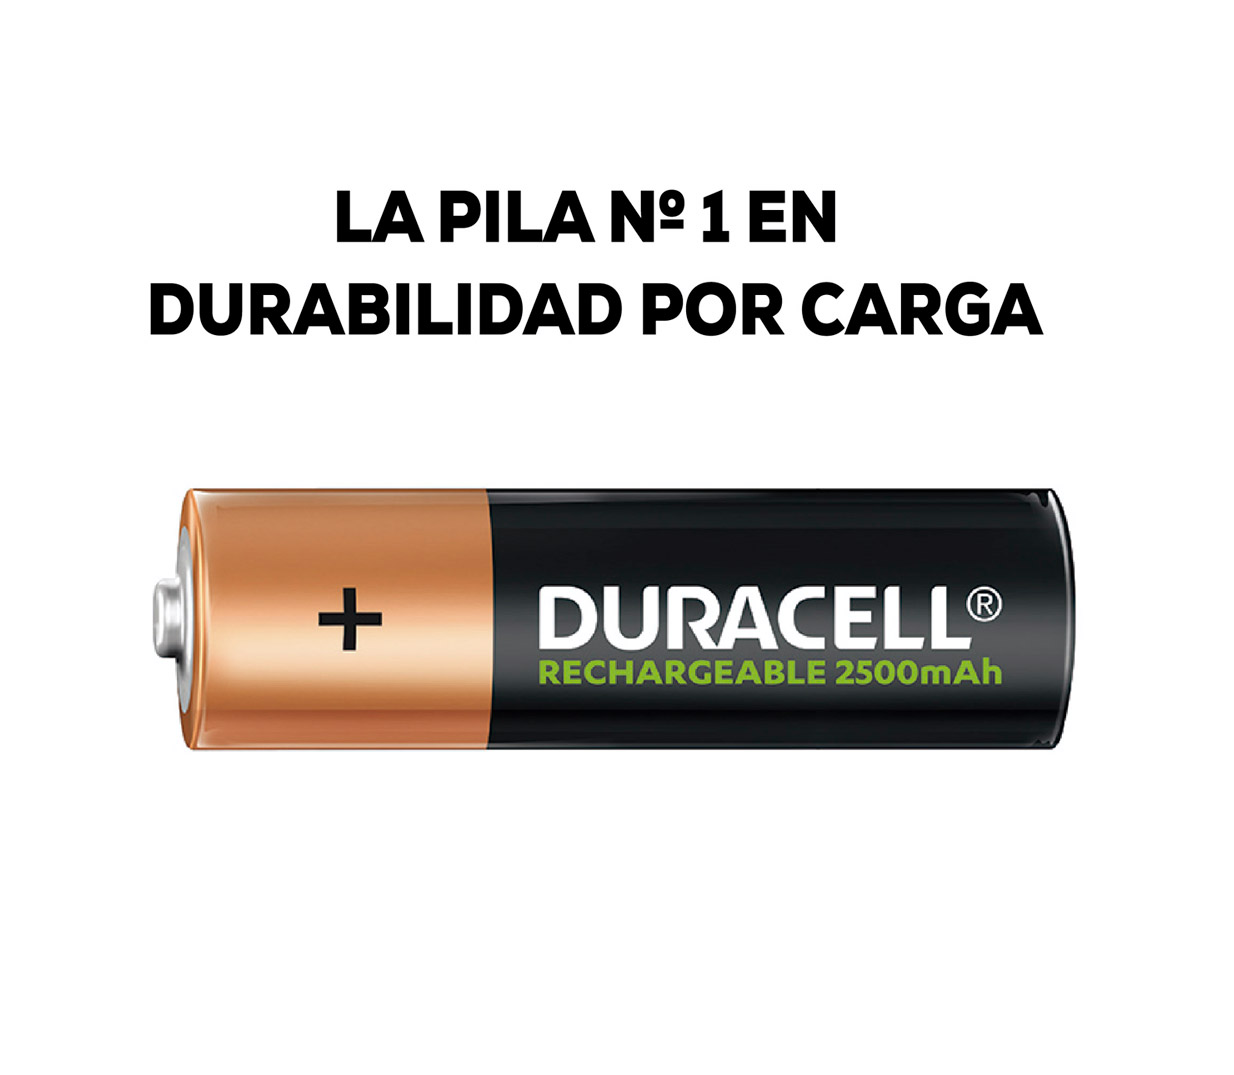 Energizer Cargador Pilas Recargables AA y AAA, Puerto USB, 2 Pilas AA  Incluidas 12 Horas : : Electrónica